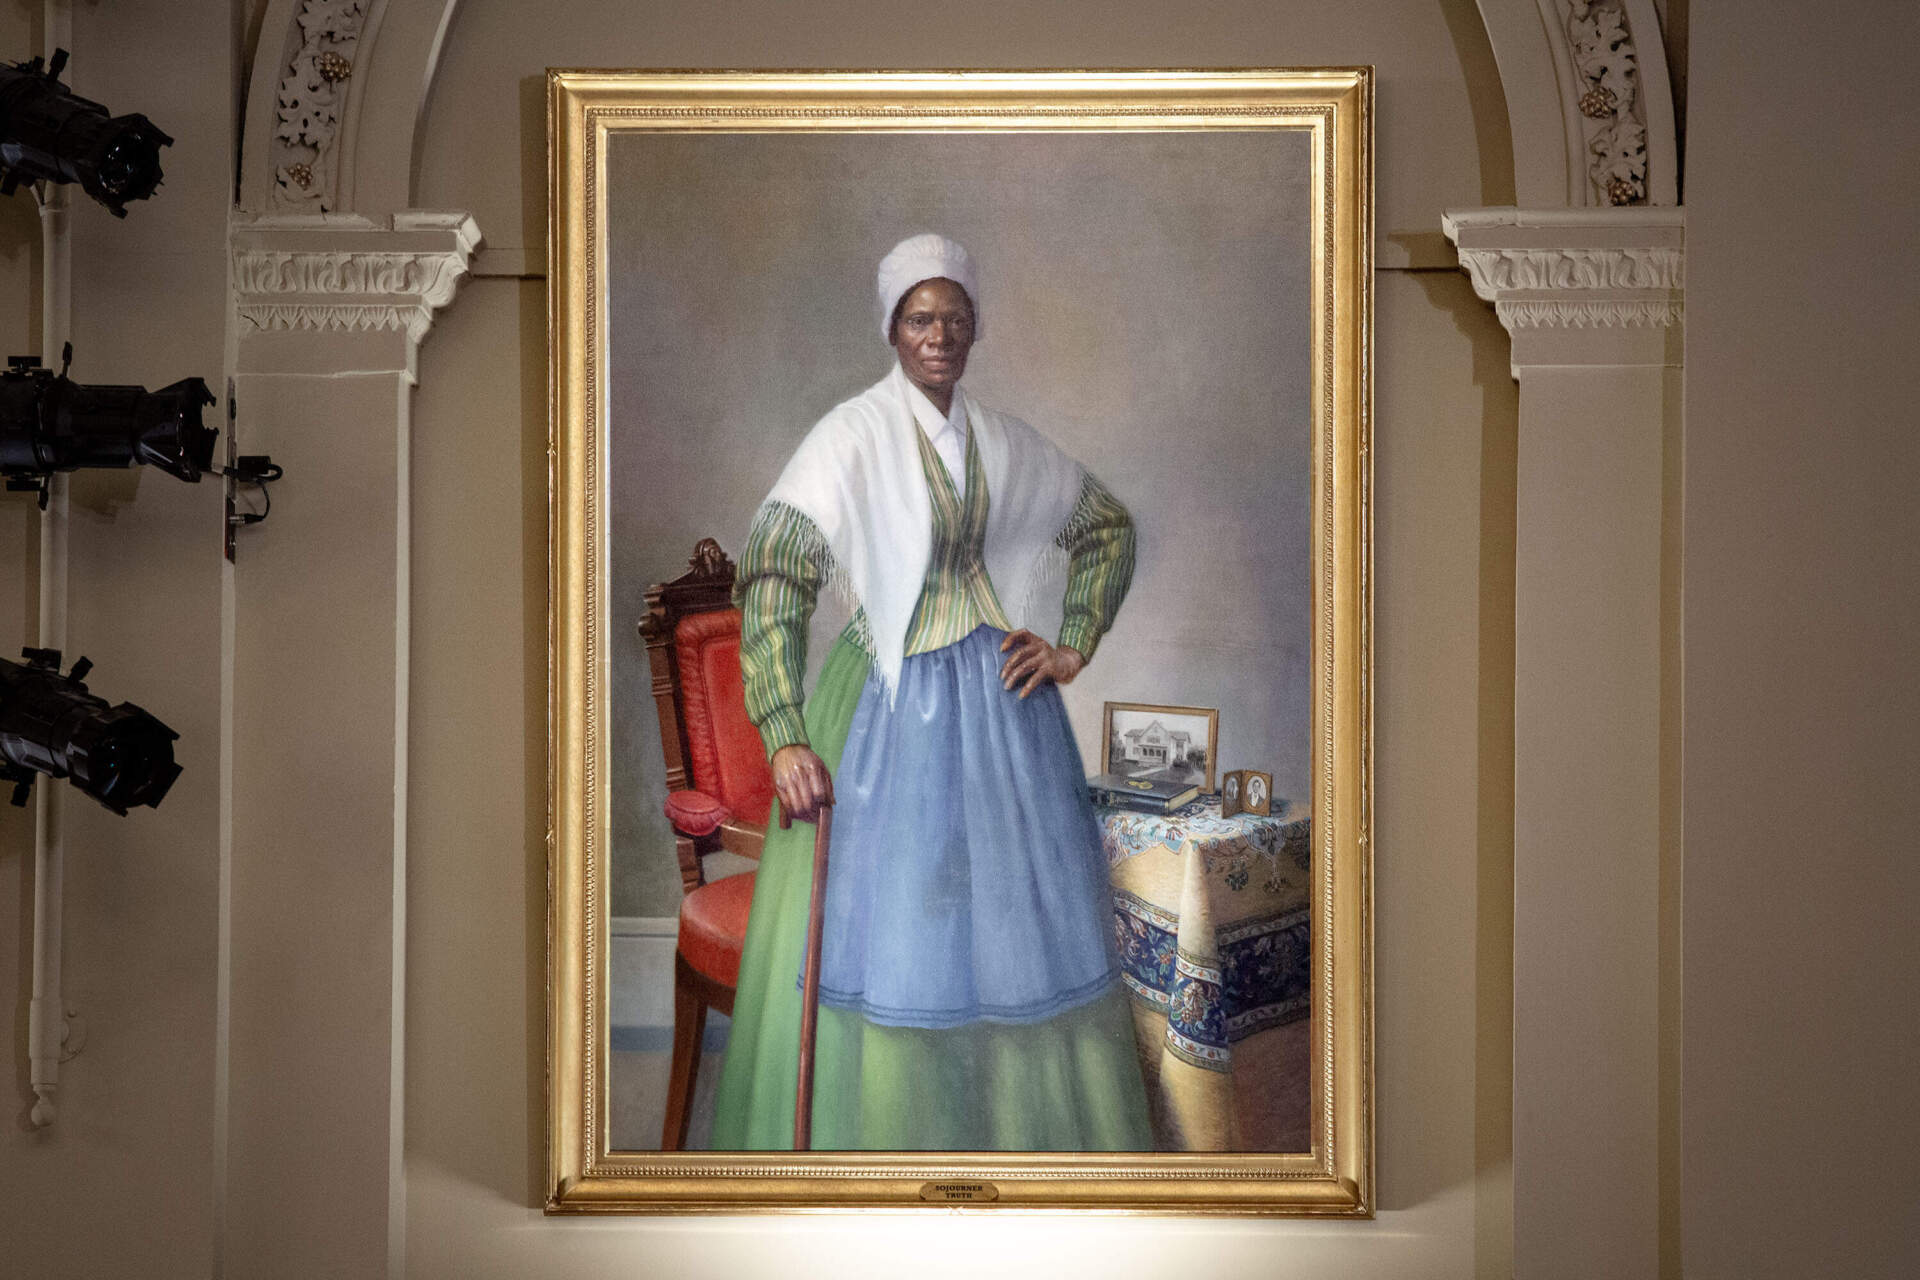 Artist Manu Saluja's portrait of Sojourner Truth at Mechanics Hall in Worcester. (Robin Lubbock/WBUR)